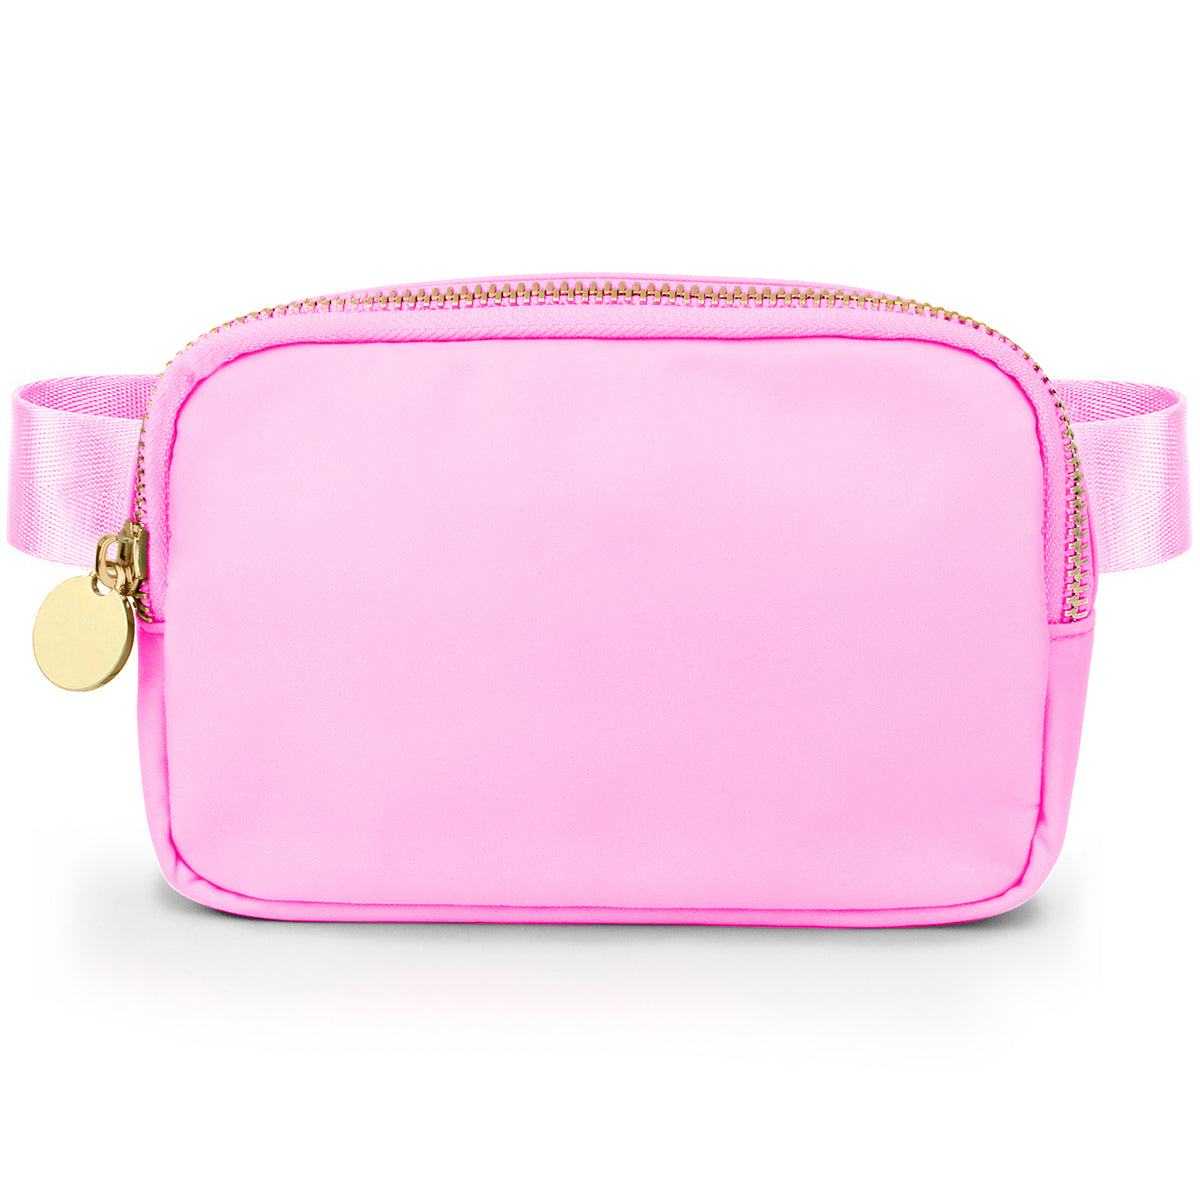 Nylon Belt Bag - Light Pink Fanny Pack For Women - Crossbody Bag Waist Pack Bum Bag